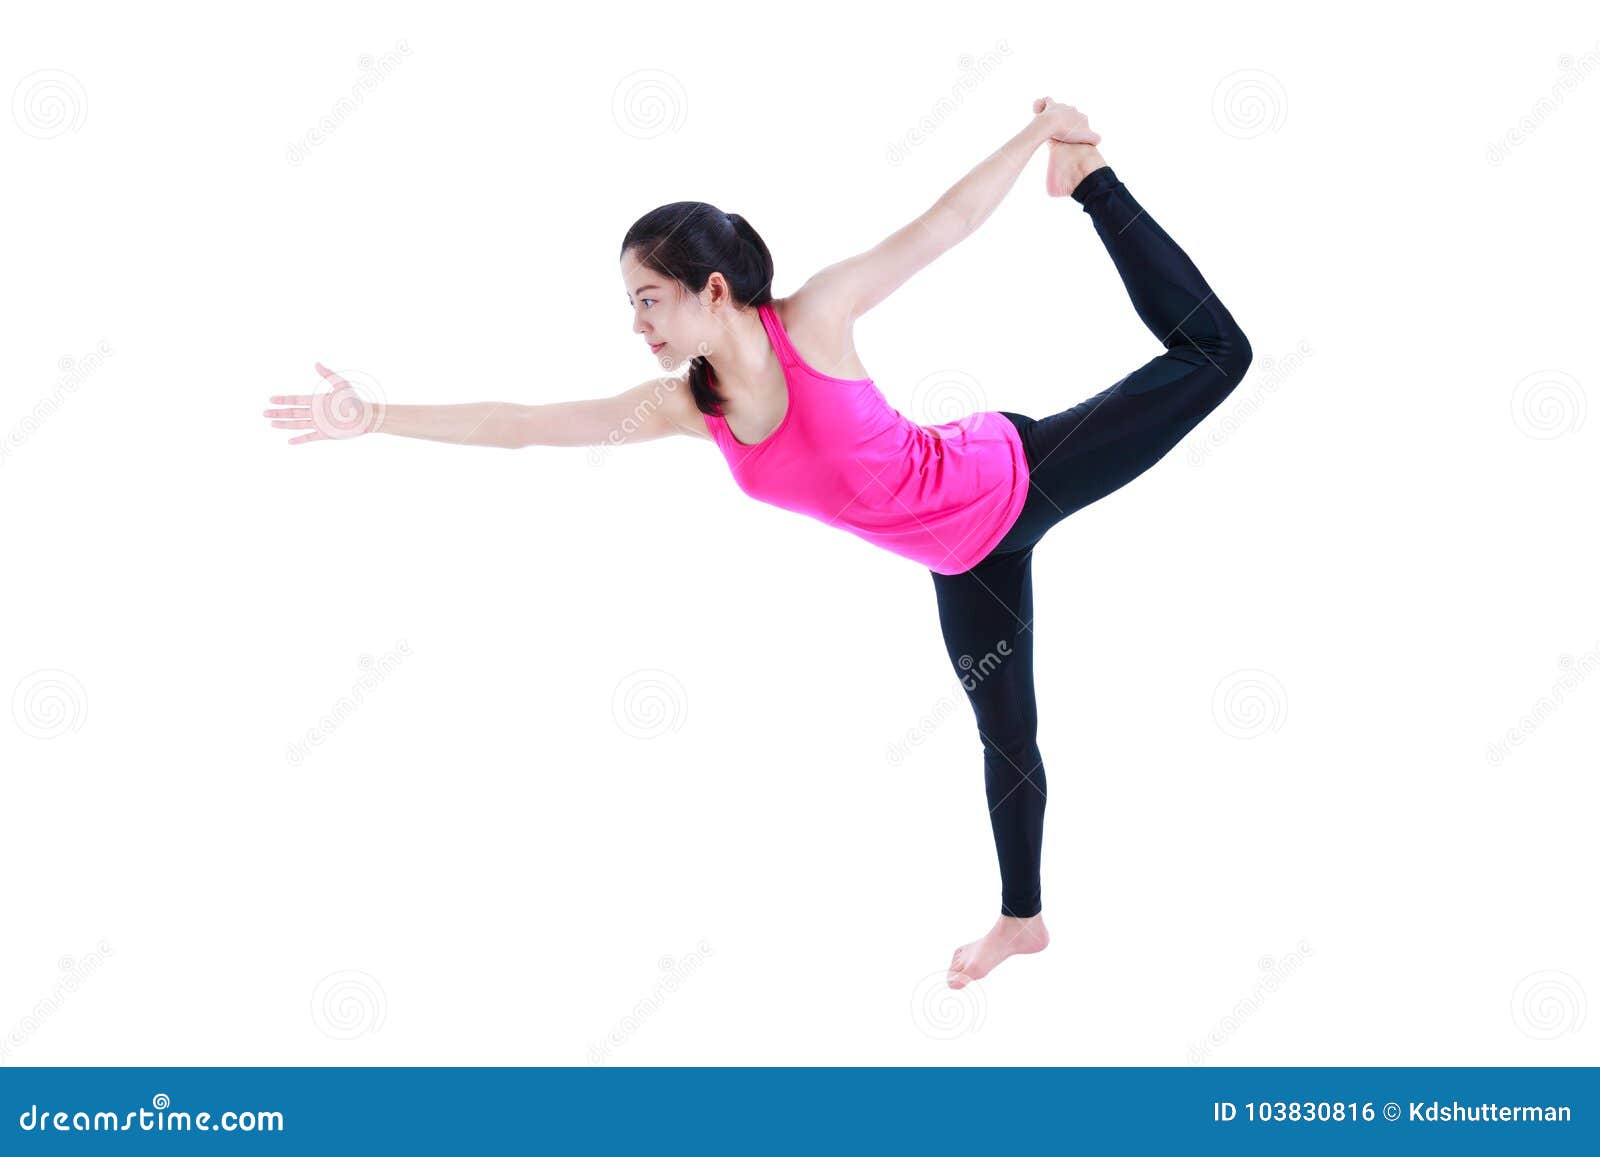 Yo Yoga - Standing Bow Pulling Pose Yogini: @leeannelliott #yoyoga  #yoyogacommunity #standingbowpullingpose #bikram #26poses #hotyoga  #yogastudio #yogasouthafrica #yogacapetown #backbend #balance #twist  #dandayamanadhanurasana #howtogetintoapose | Facebook